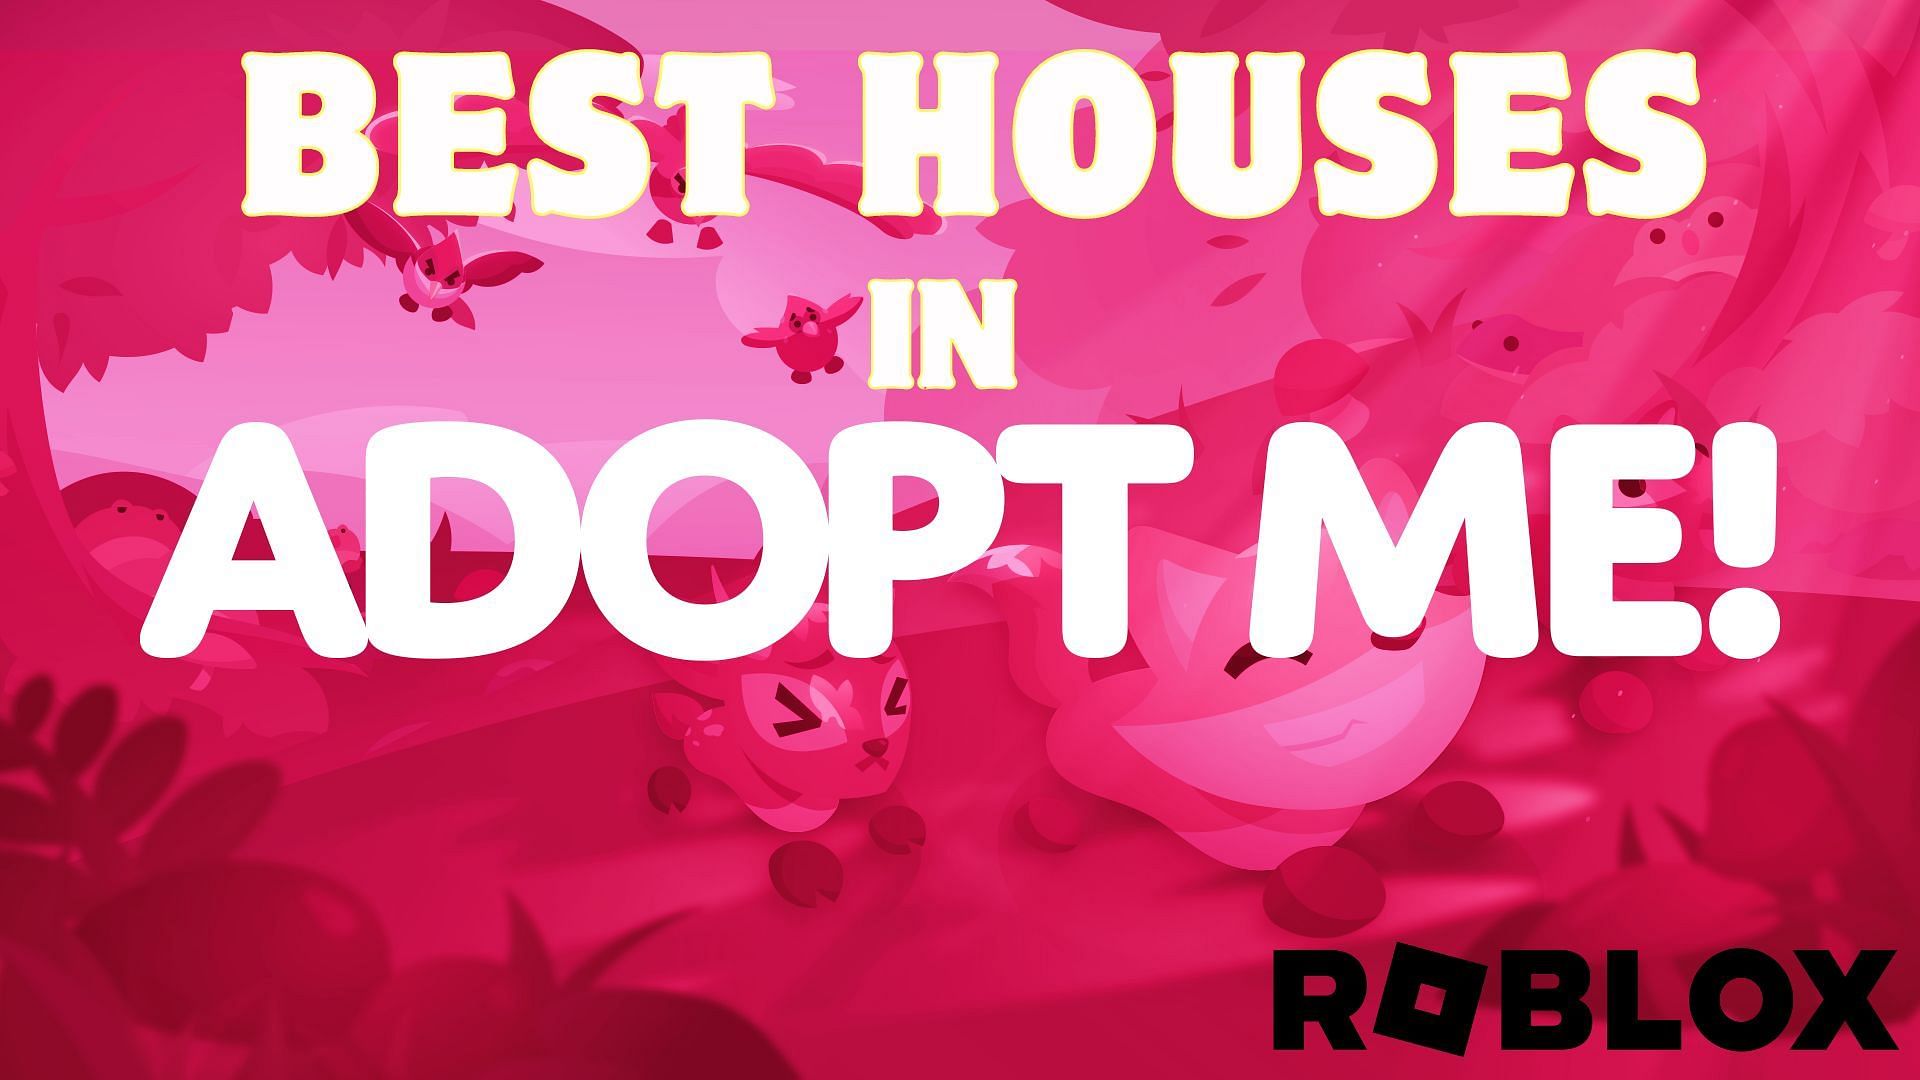 Best houses in Roblox Adopt Me! (Image via Adopt Me/Sportskeeda)